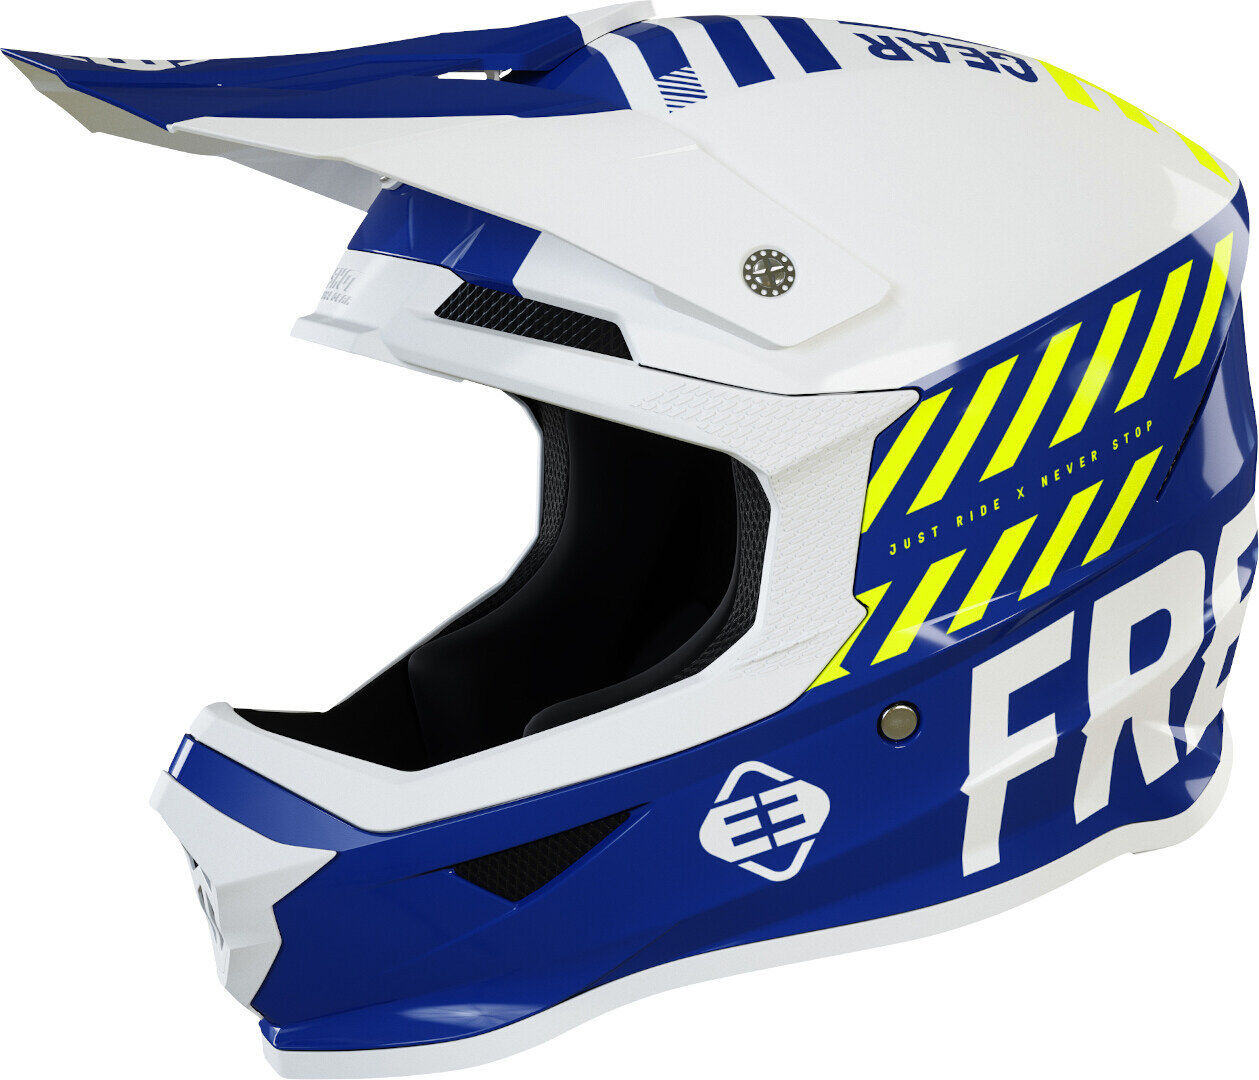 Freegun XP4 Danger Casco de Motocross - Blanco Turquesa Azul (XS)